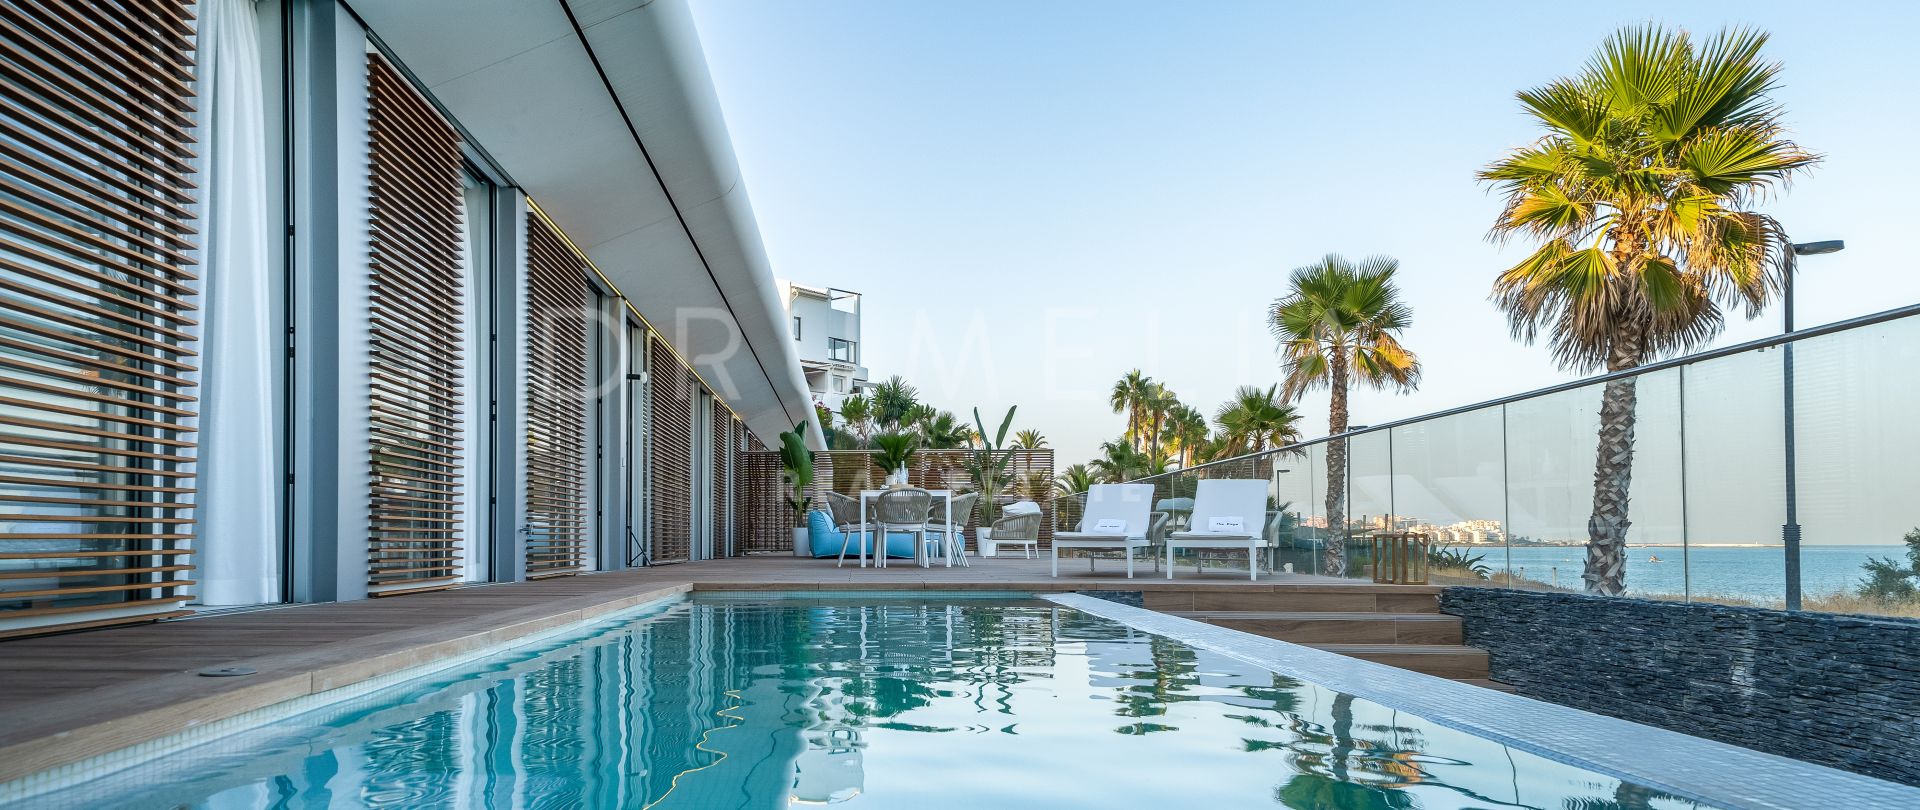 Incroyable villa individuelle dans une urbanisation de luxe en première ligne de plage à Estepona.